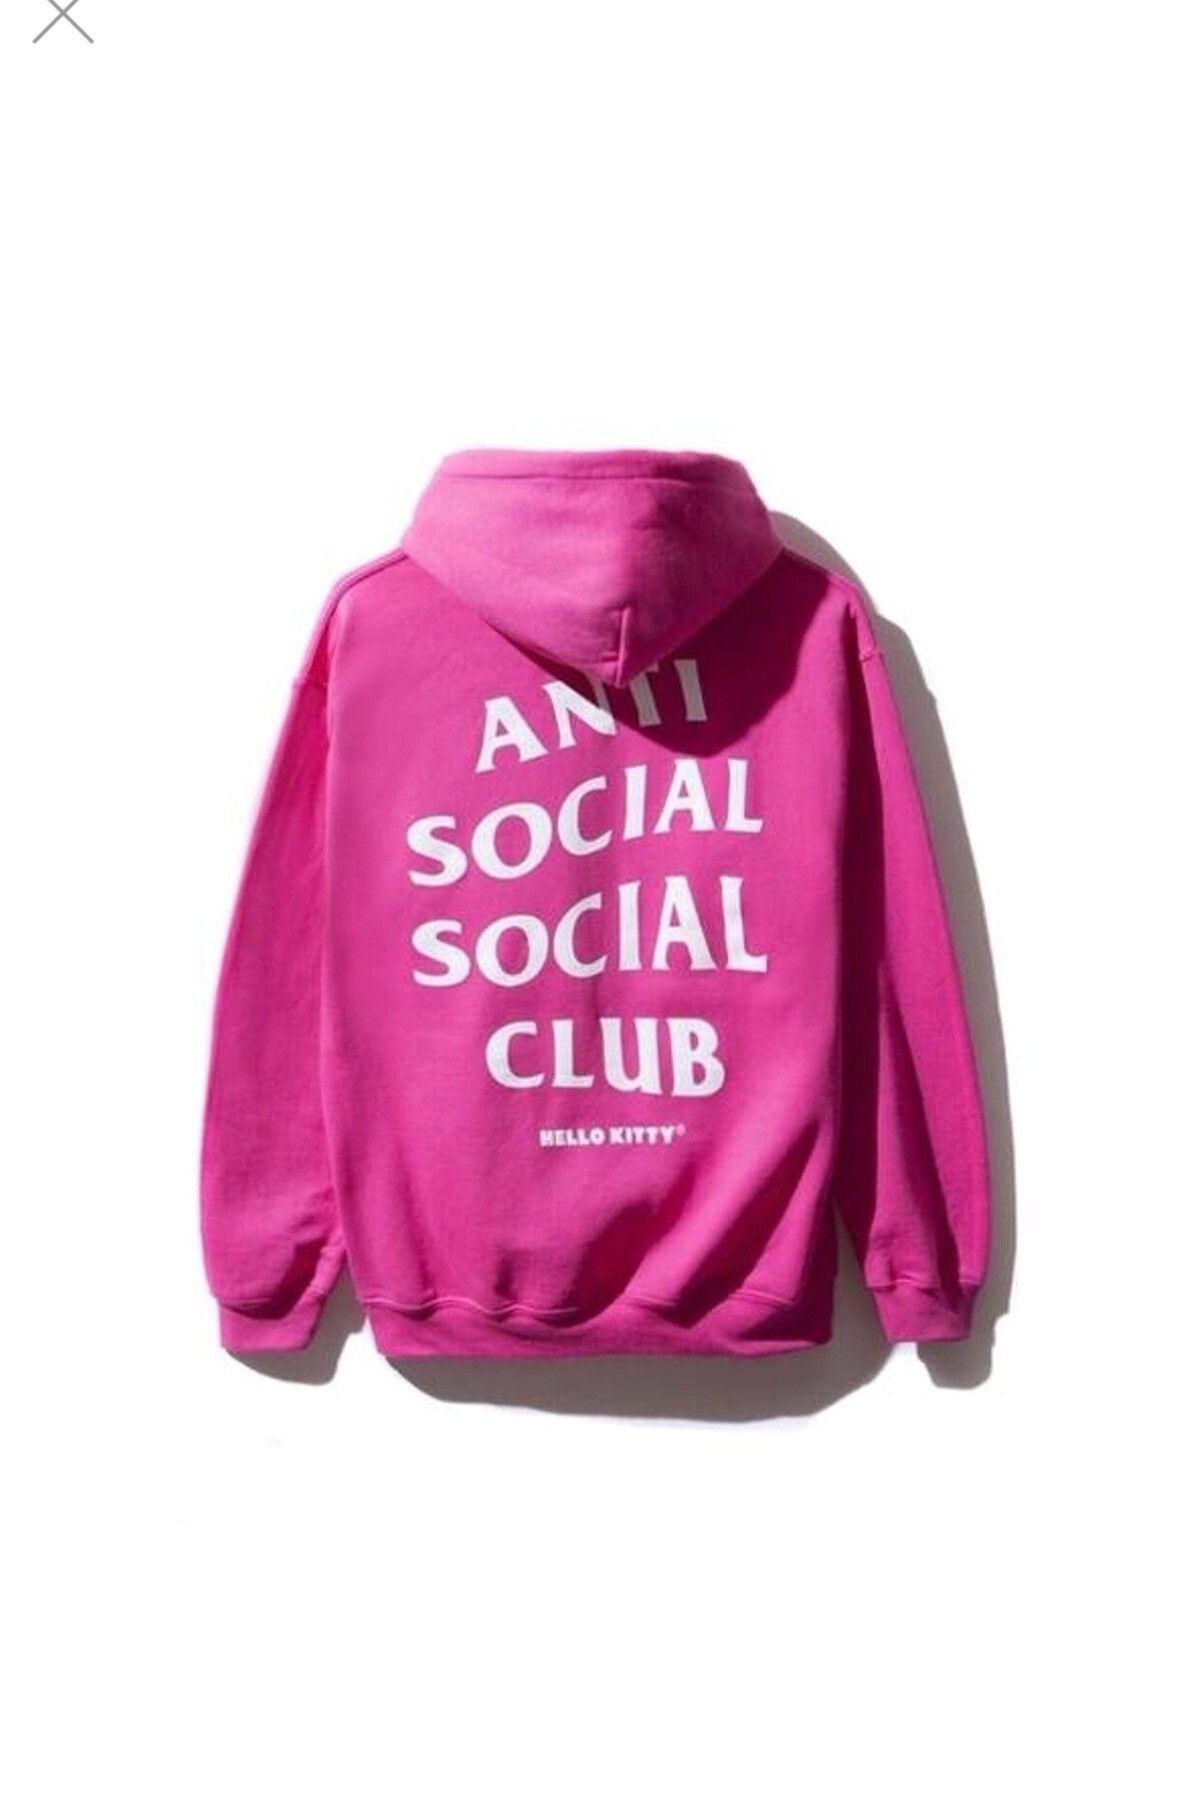 Anti Social Social Club ASSC X Hello Kitty Hoodie Size US M / EU 48-50 / 2 - 2 Preview